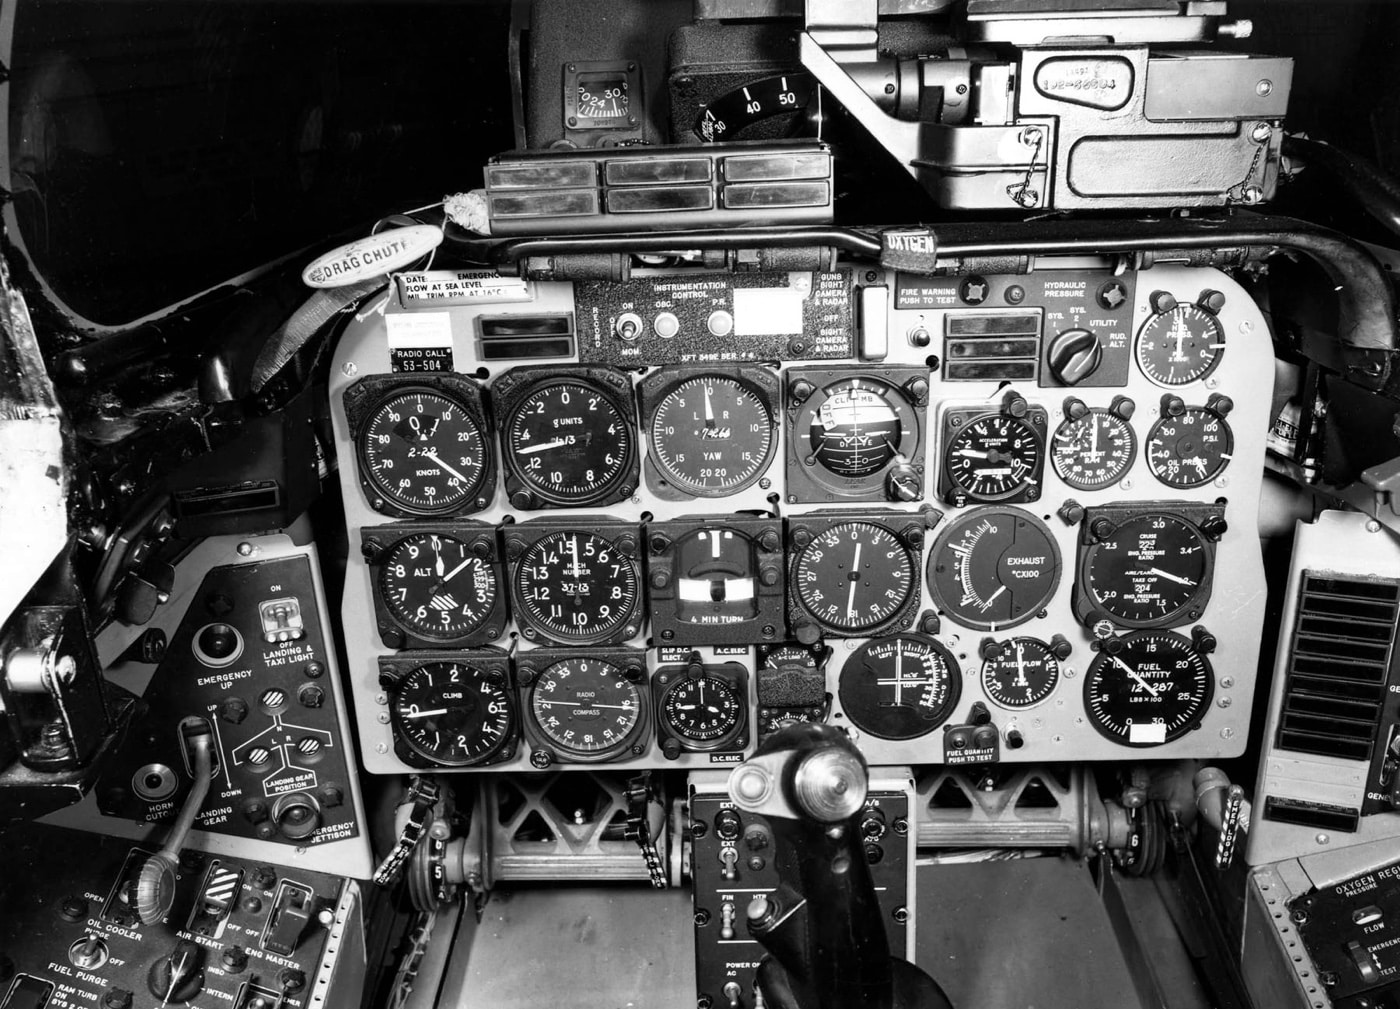 cockpit of f-100d super sabre flying instruments pedals stick throttle gauges altimeter